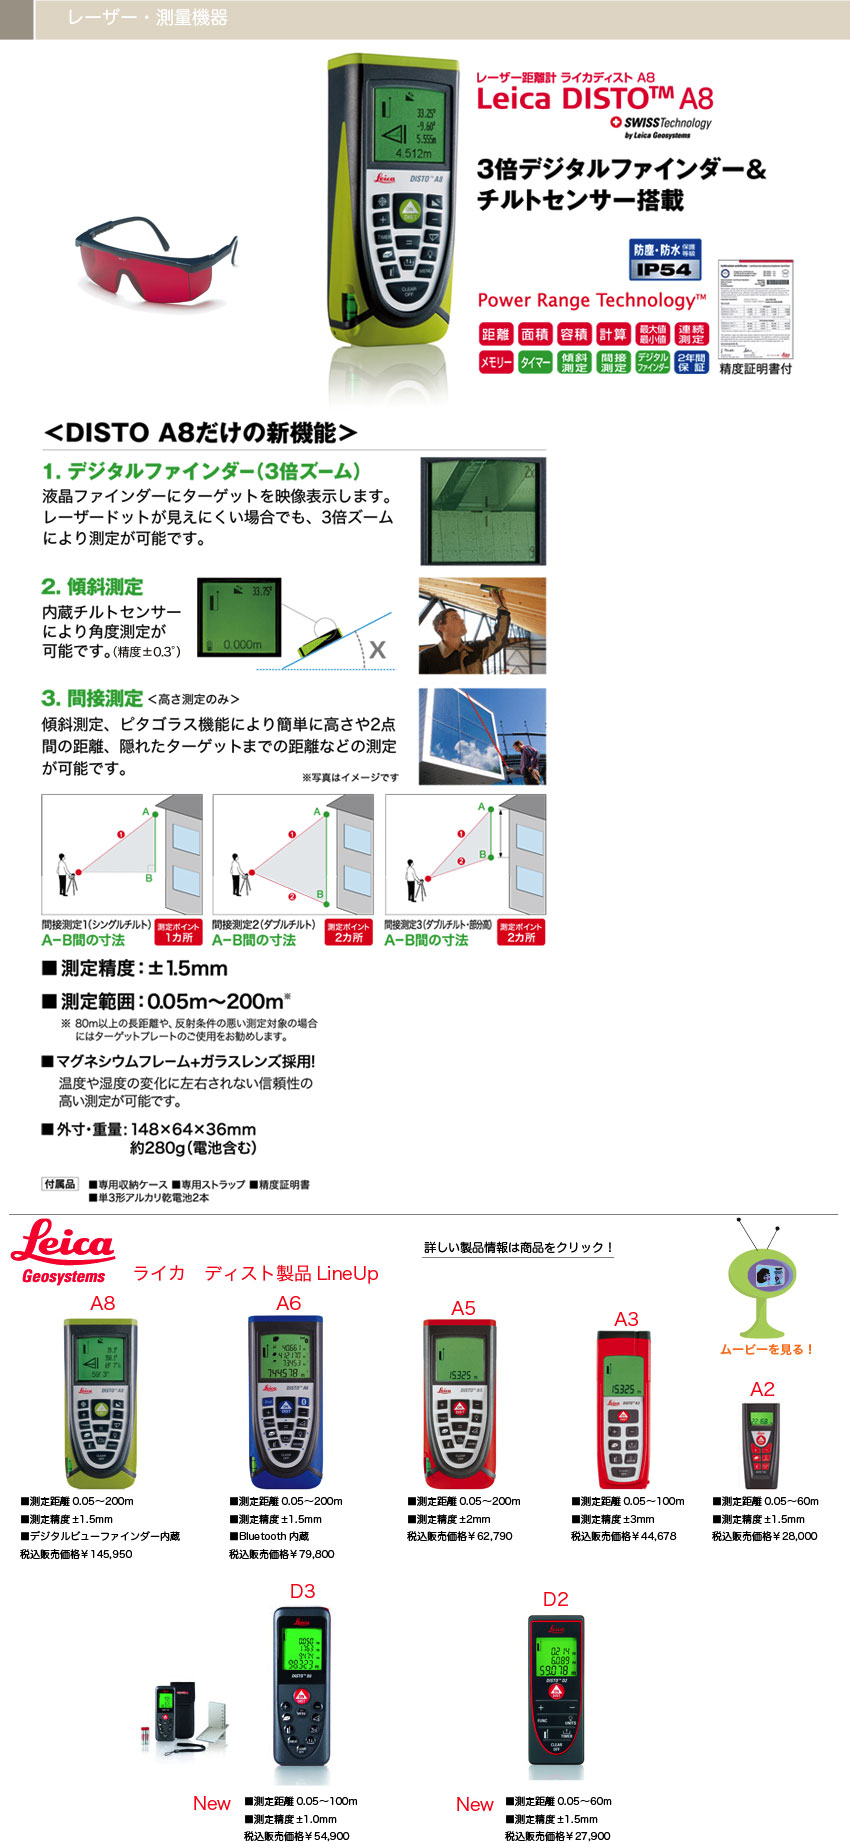 (タジマ) ライカディストA5用 三脚アダプター (DISTO-A5ADP) TJMデザイン 格安価格: 風速計